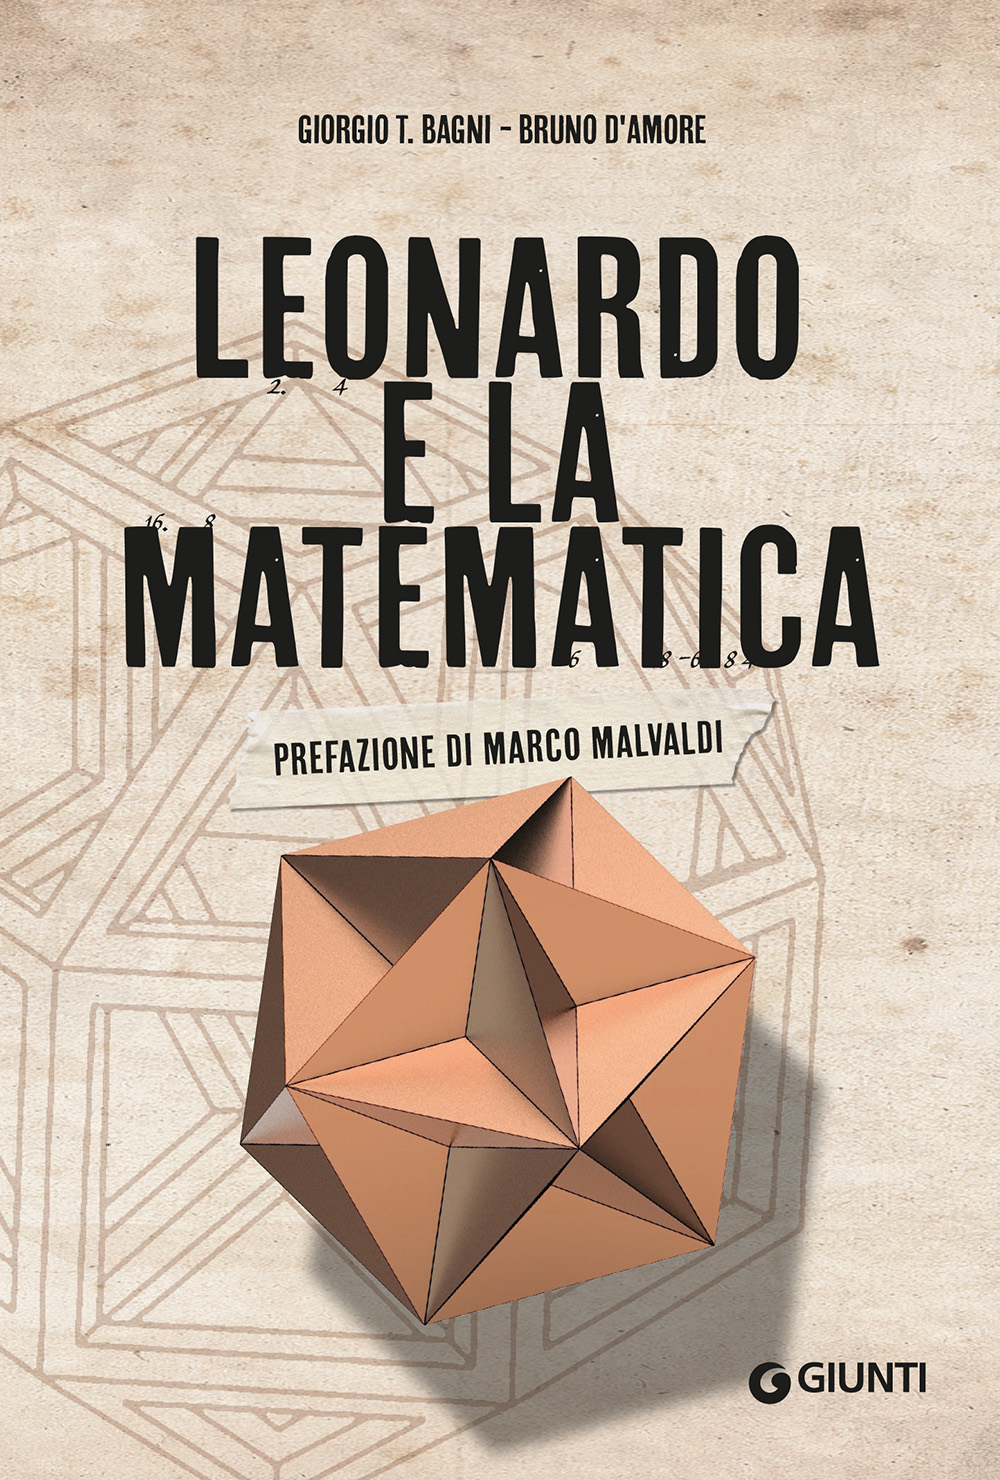 Image of Leonardo e la matematica